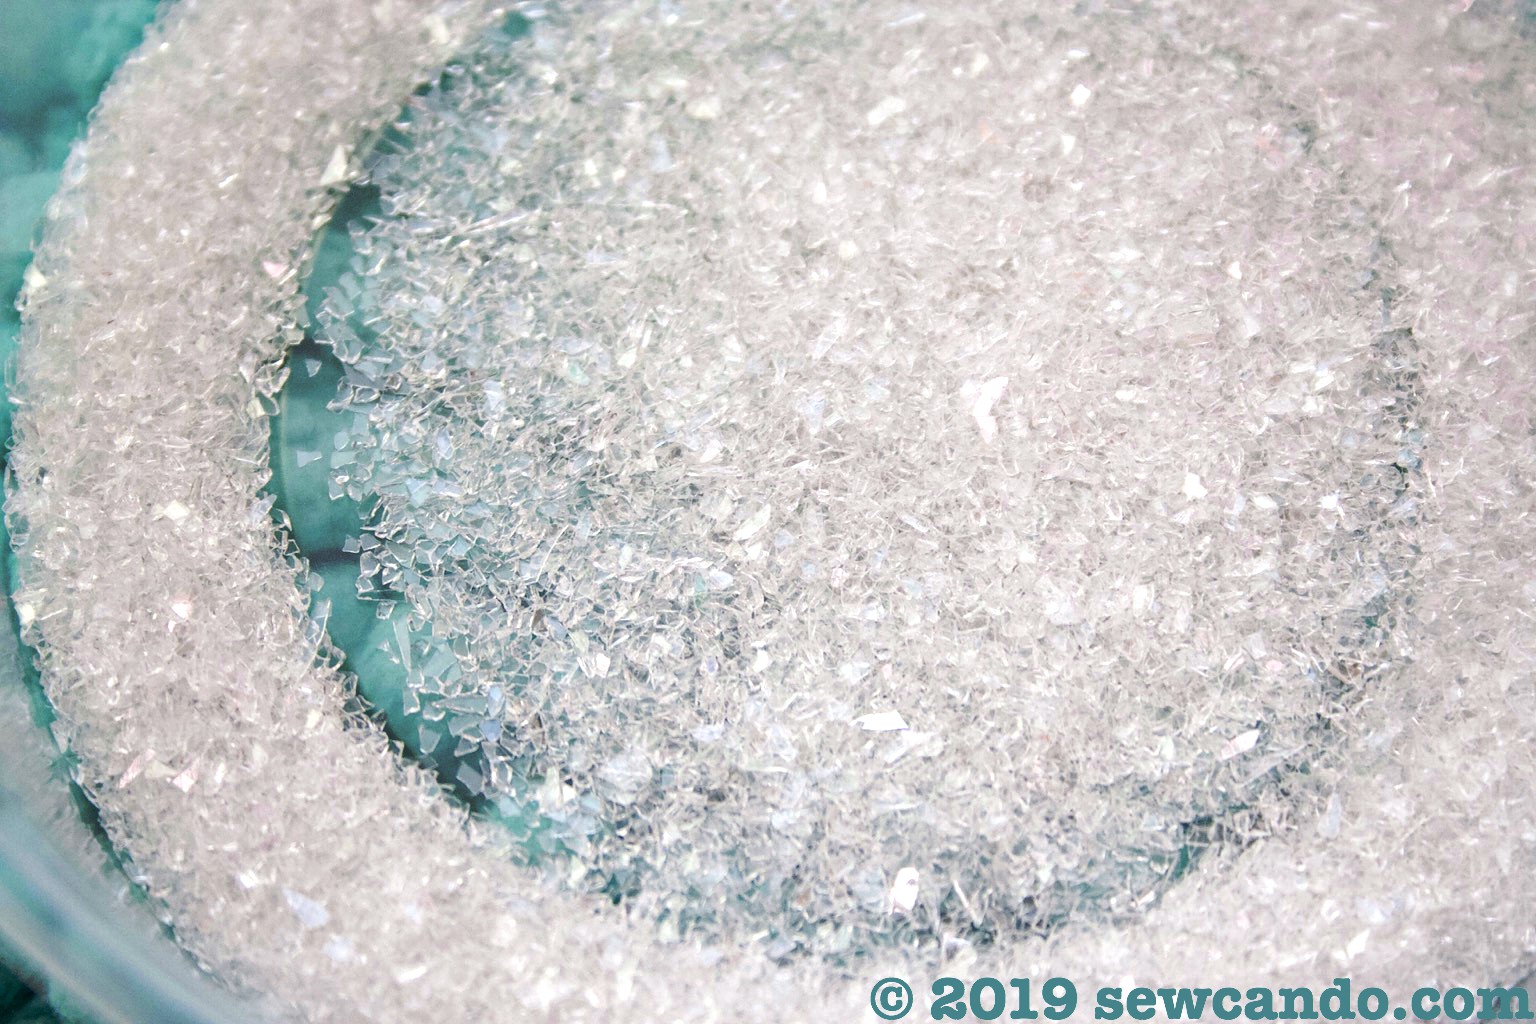 Sew Can Do: Diamond Dust Glitter Easter Eggs Tutorial